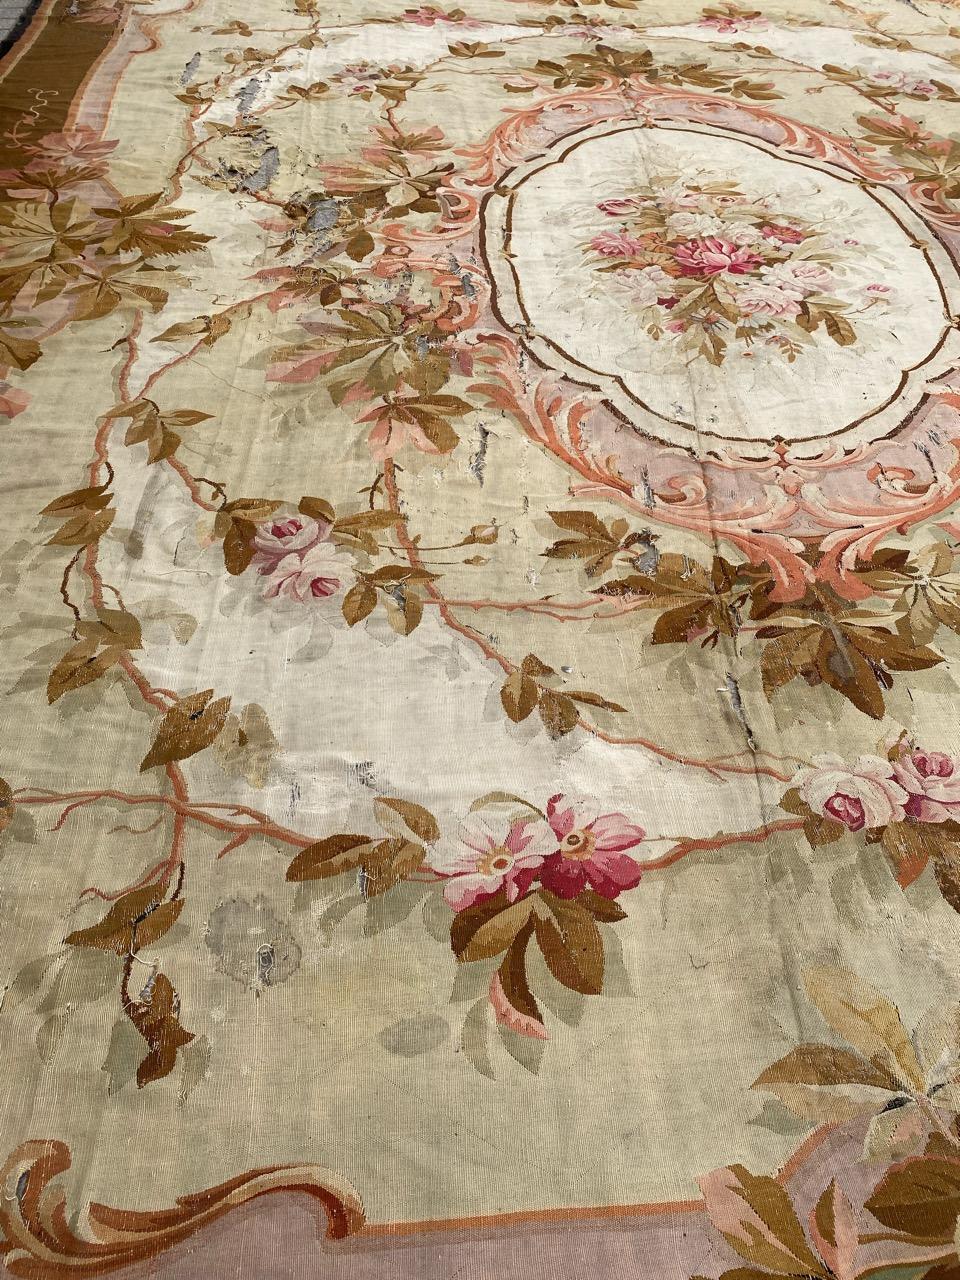 Schöne Palast Größe antike Französisch Aubusson flachen Teppich mit schönen floralen Design und schöne natürliche Farben, ganz Hand mit Wolle geknüpft.

✨✨✨
